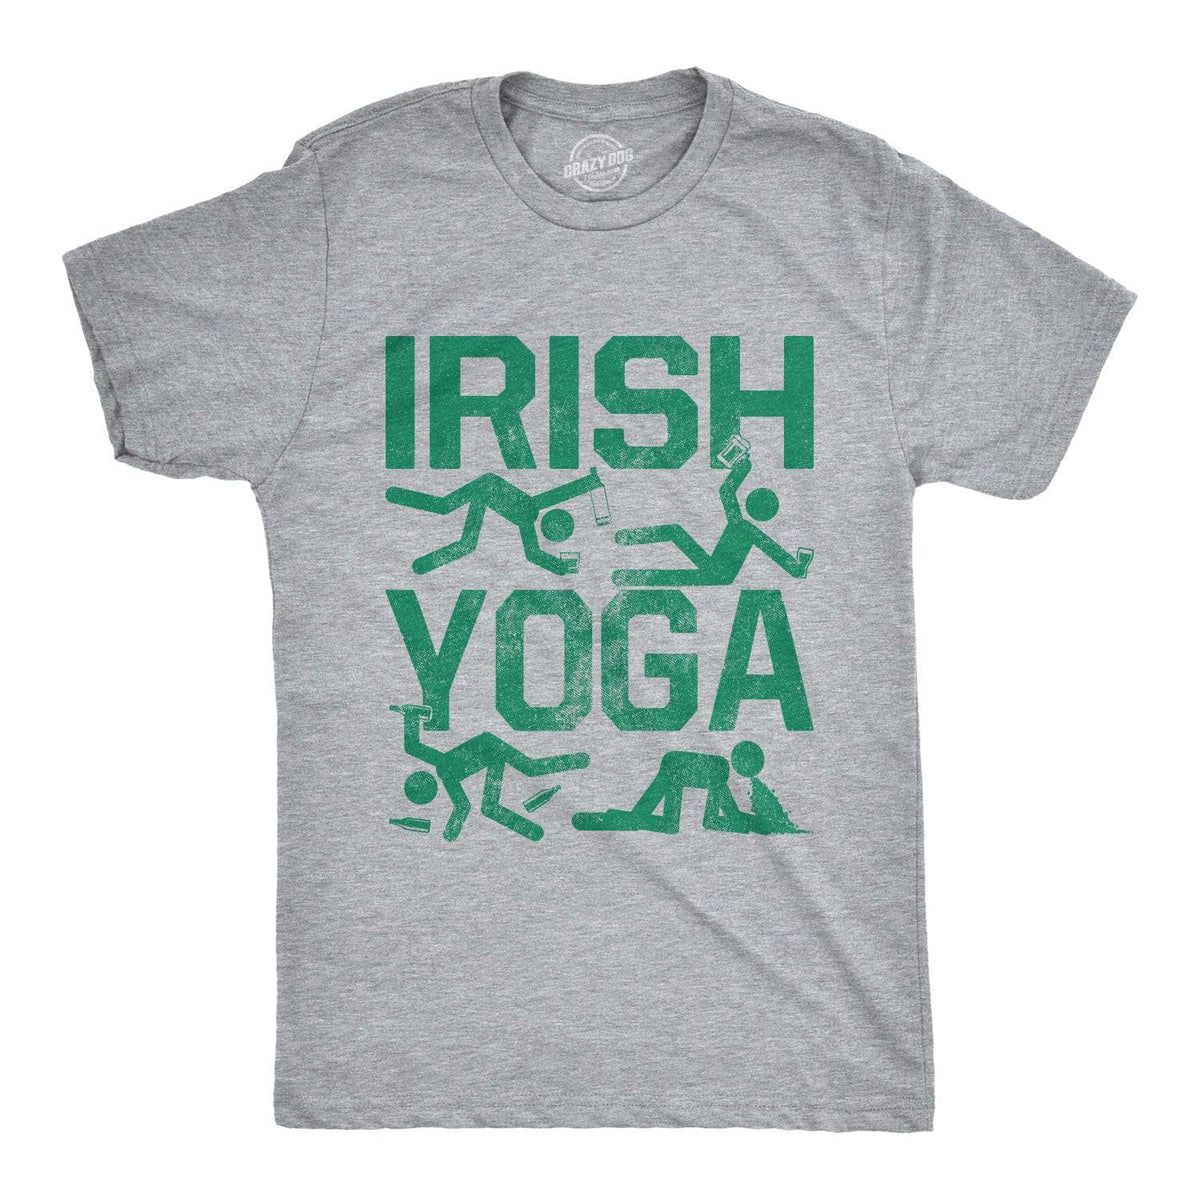 Irish Yoga Men's T Shirt - Crazy Dog T-Shirts